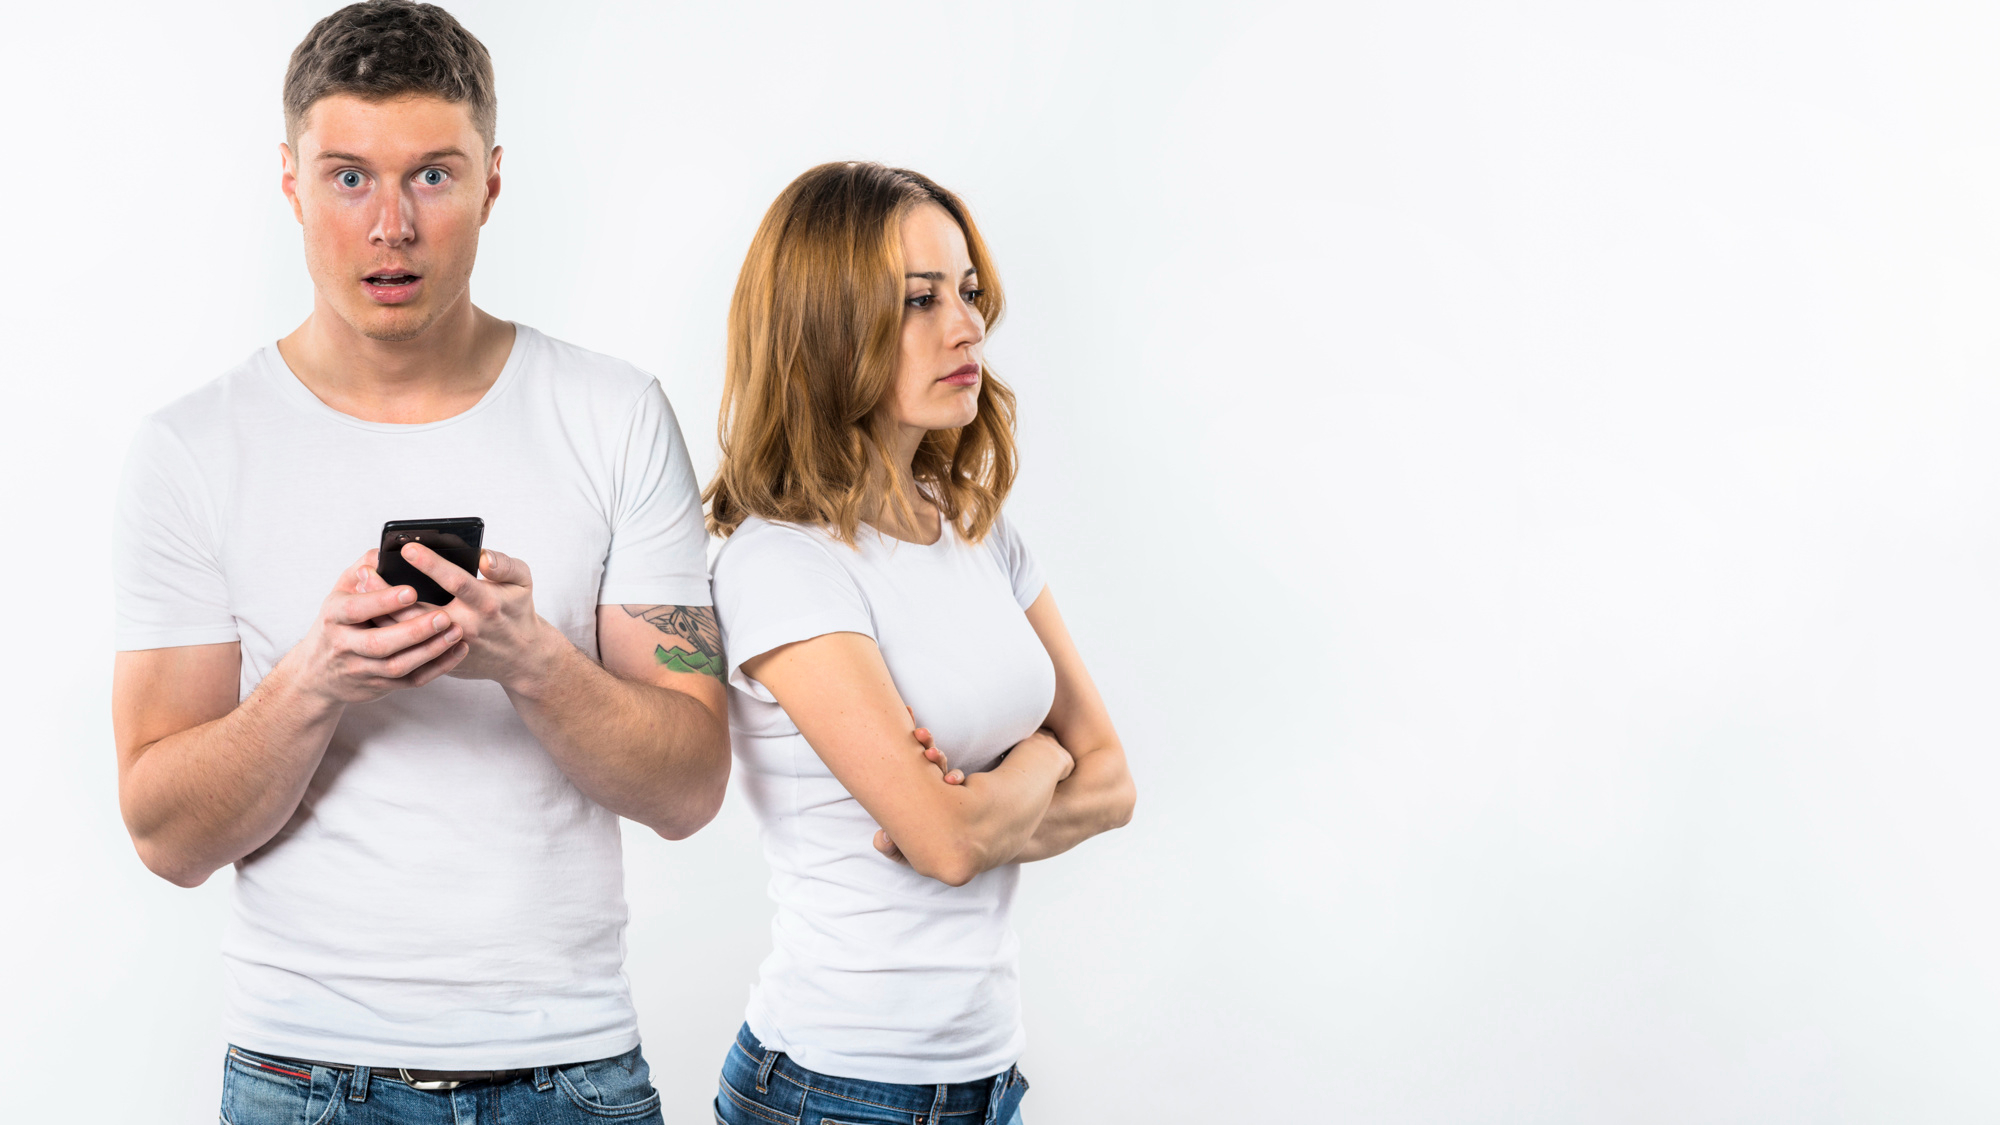 Un hombre reacciona sorprendido a algo en un teléfono mientras su novia parece disgustada | Fuente: Freepik